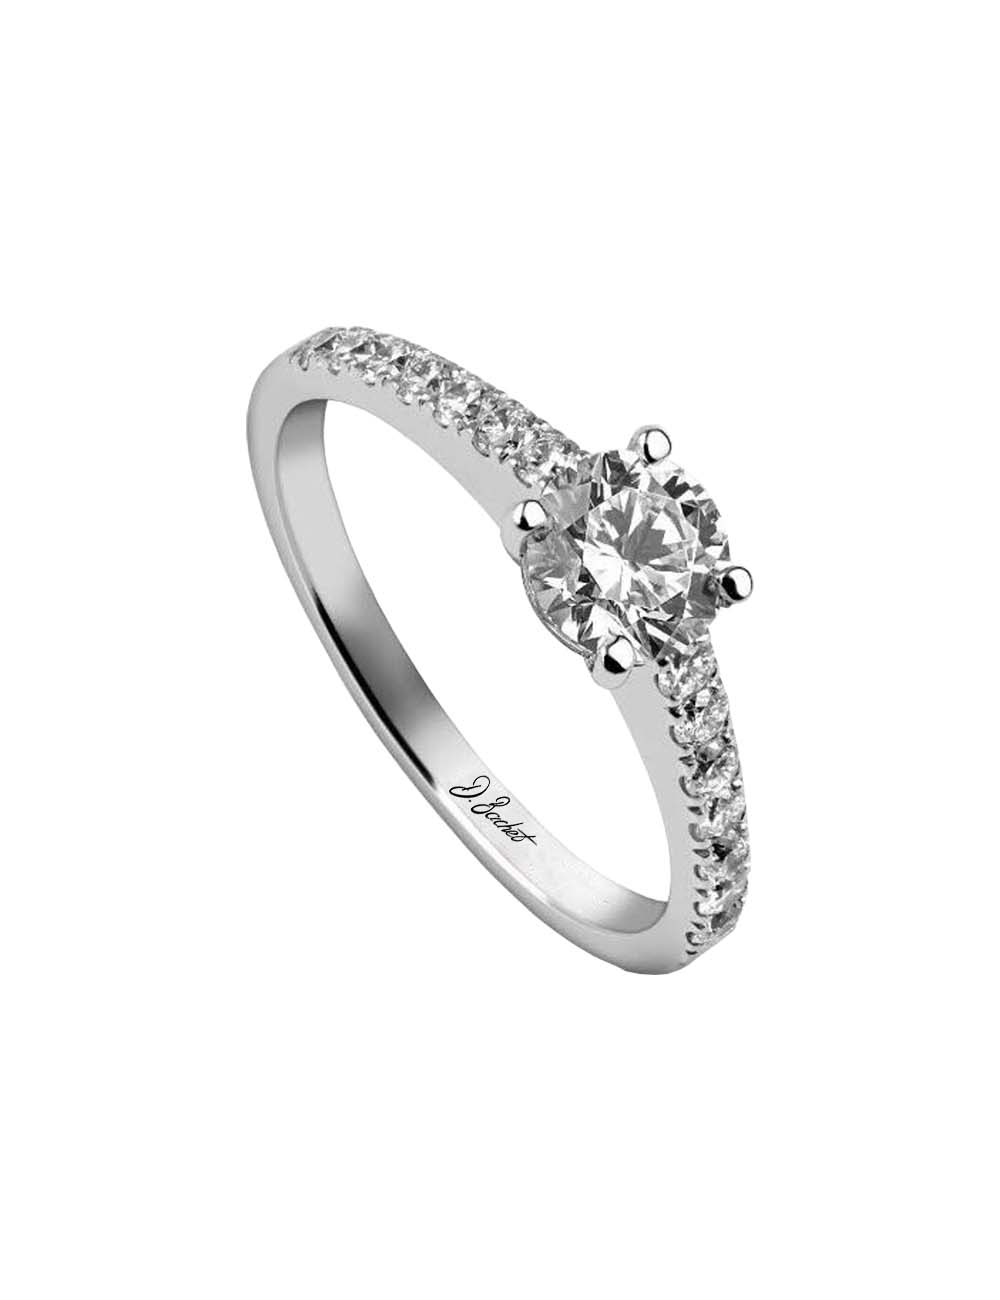 Bague de fiançailles sertie d'un diamant blanc de 0.50 carat taille brillant et de diamants blancs sertis griffes.